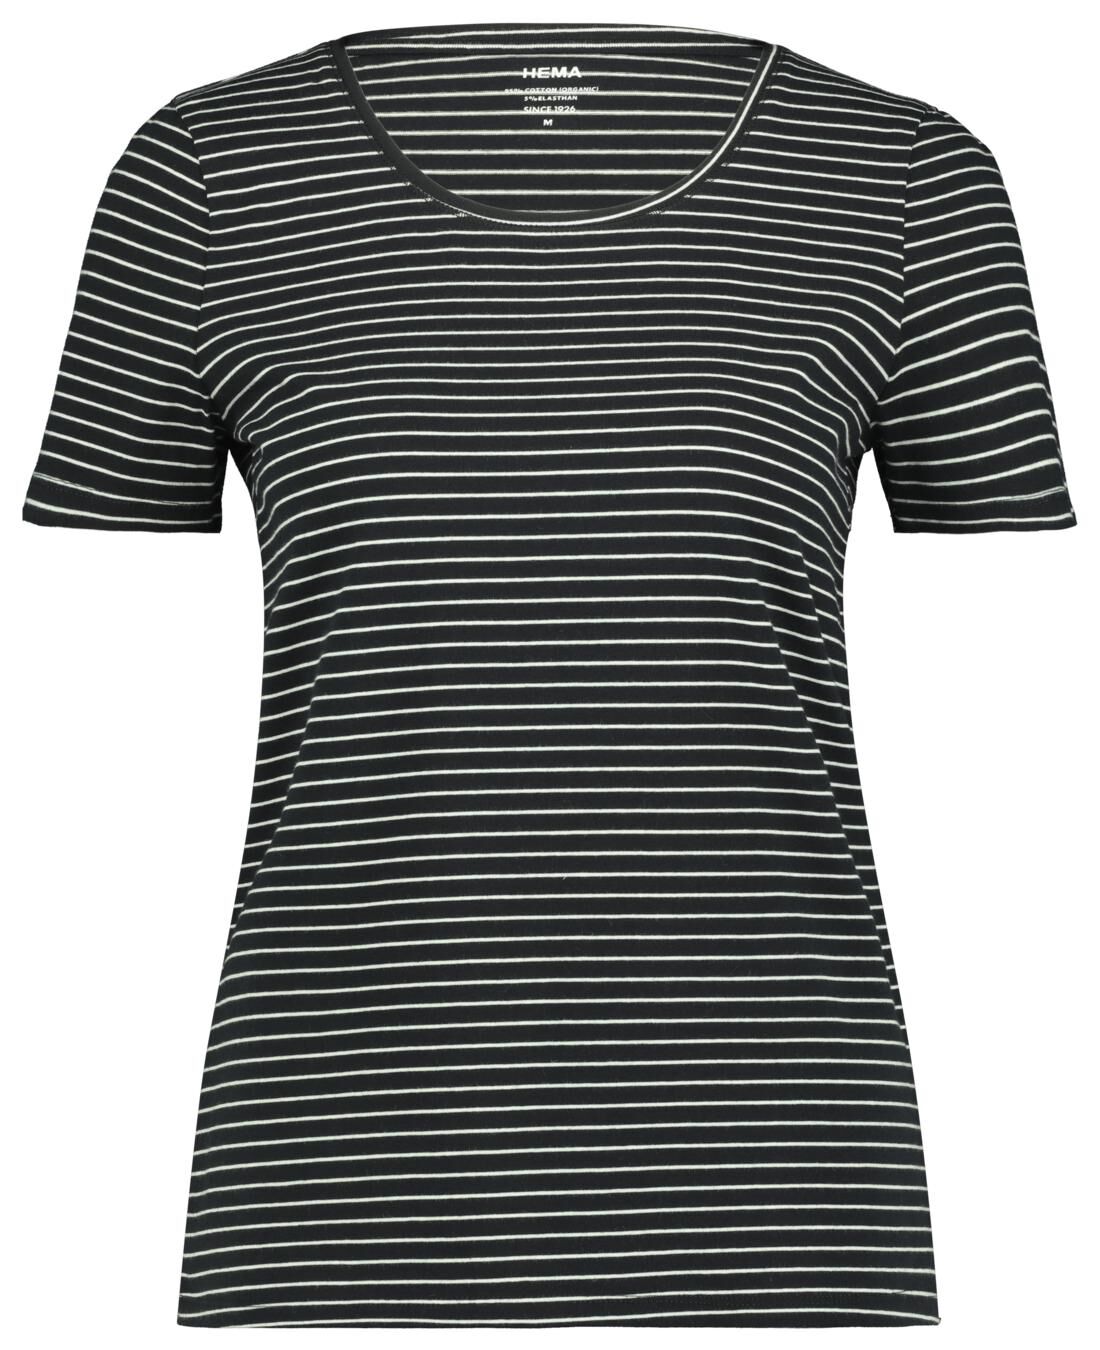 Zwart Wit Shirt Dames Sale Online, SAVE 37% - mpgc.net